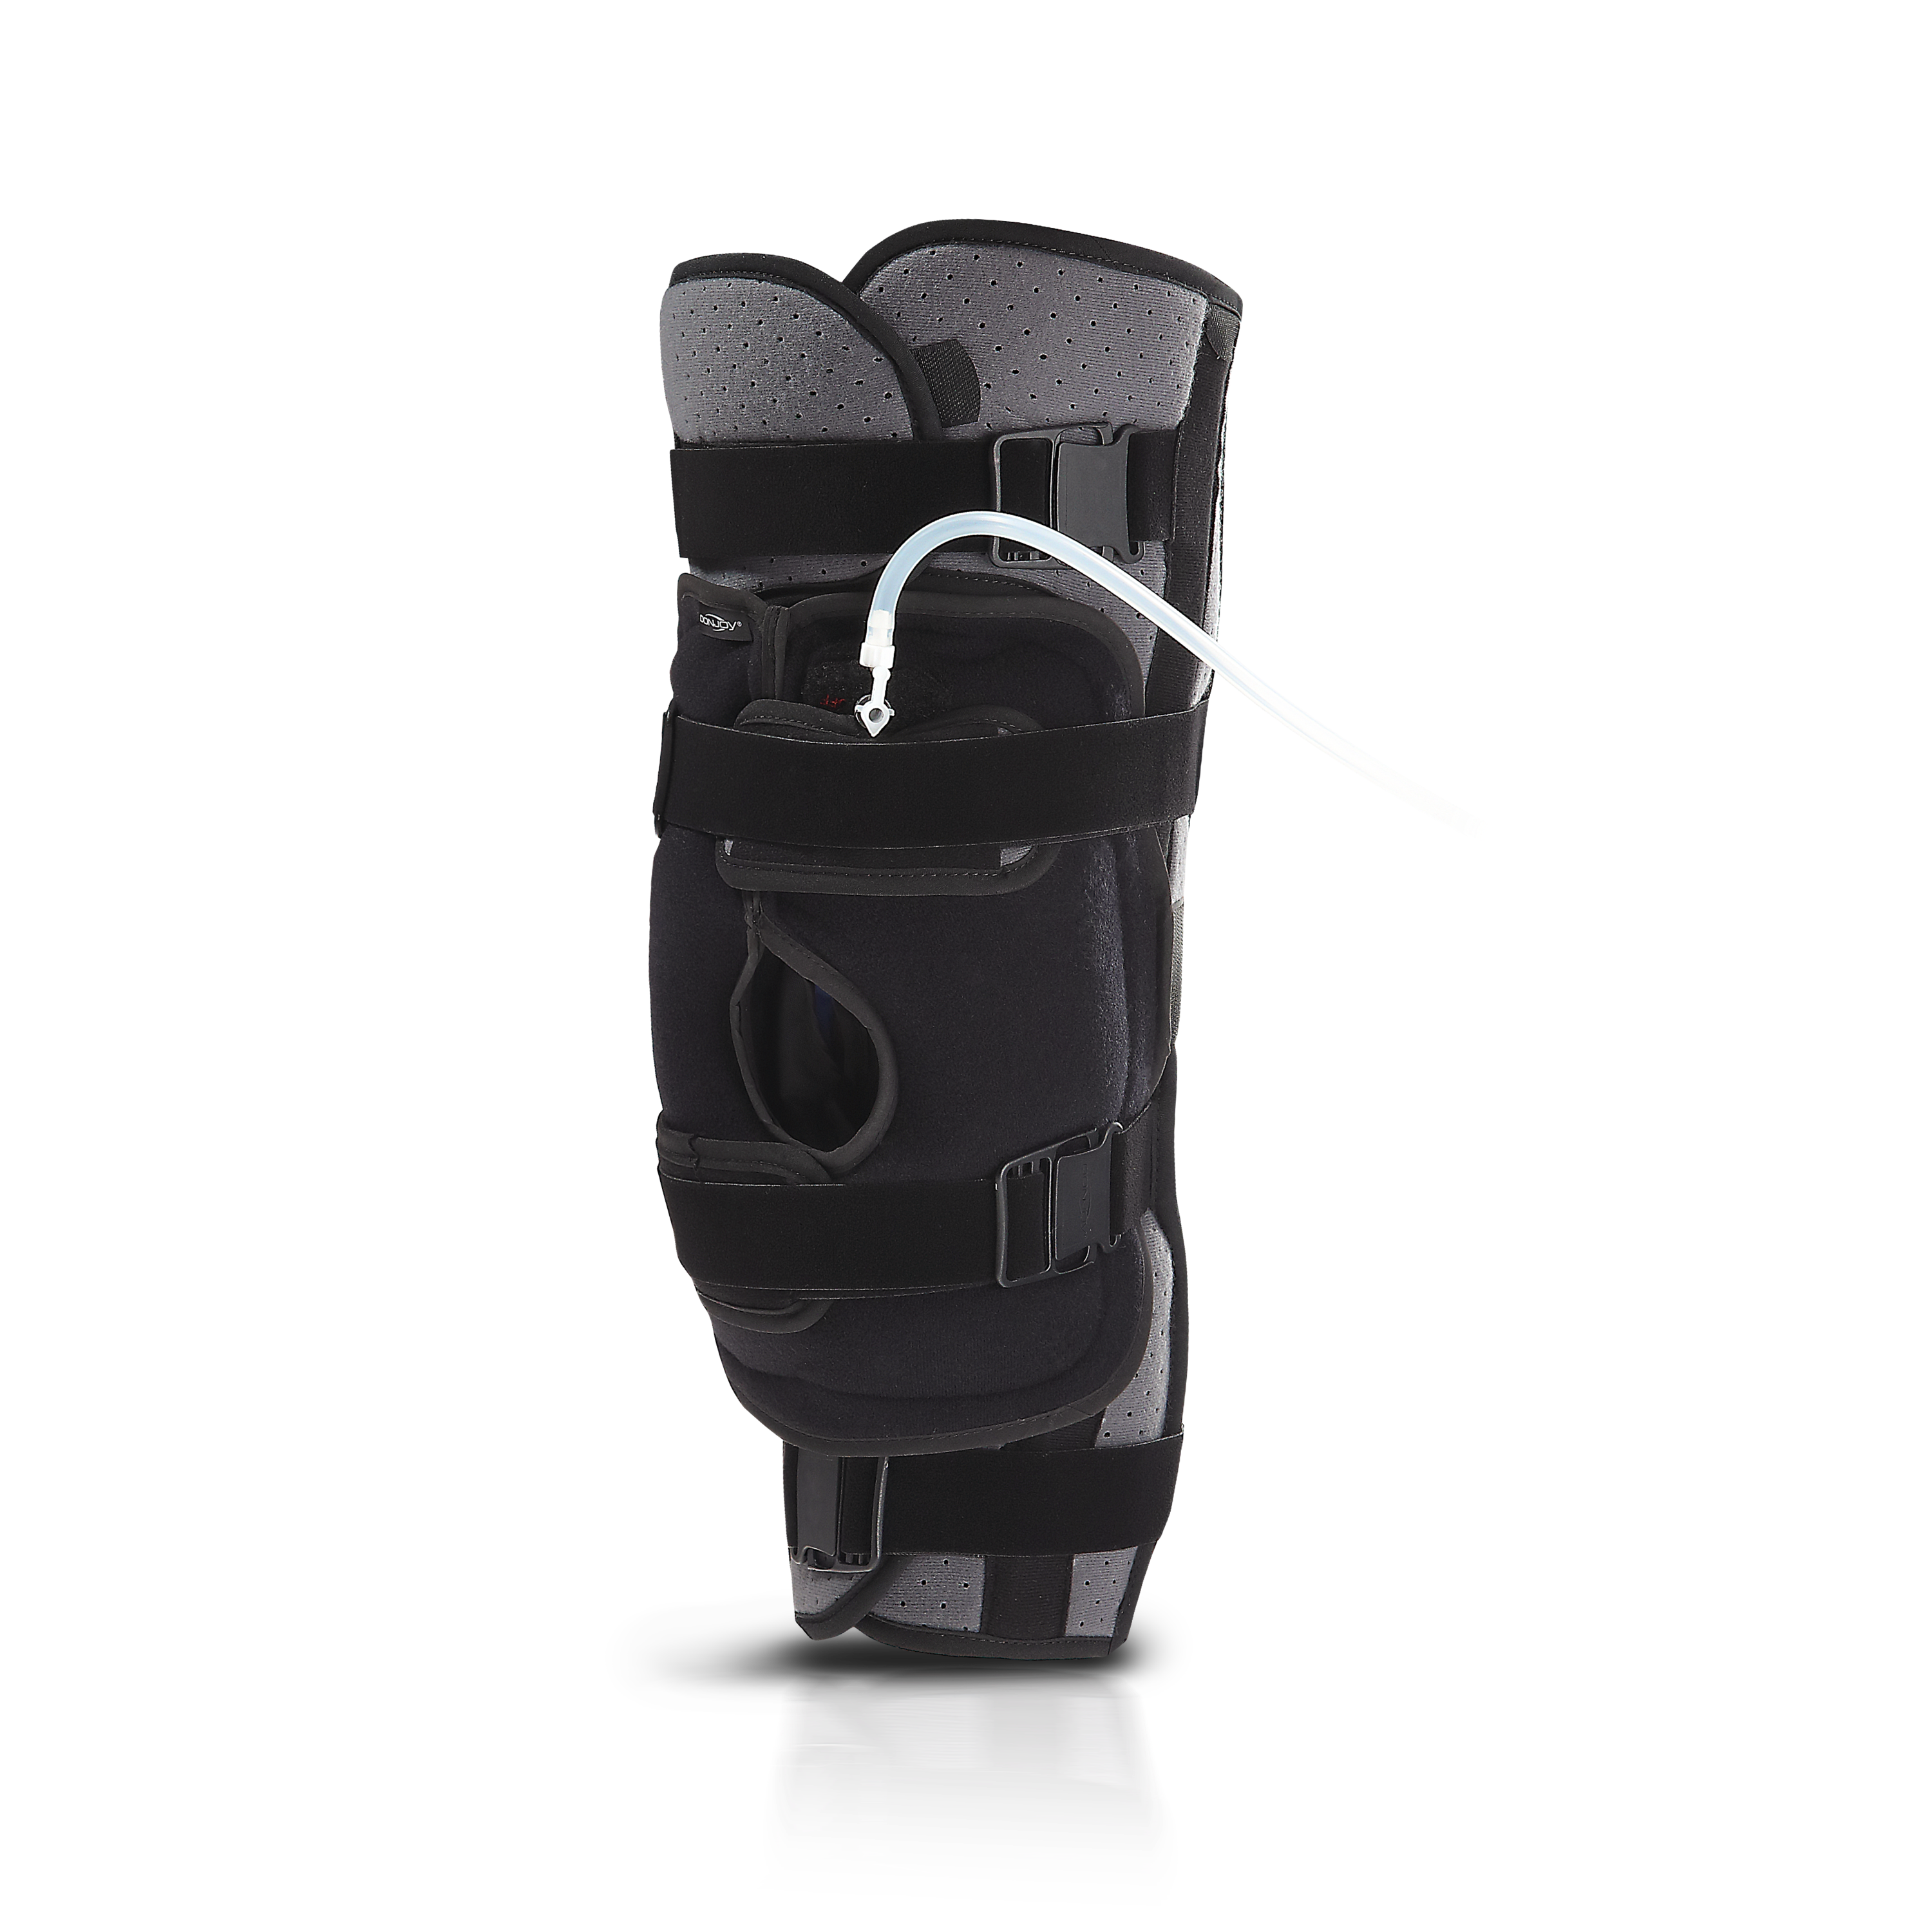 Zusatzbild DONJOY® Immo AT4 Everest, Dreiteilige Knieorthese zur Immobilisierung, einstellbar